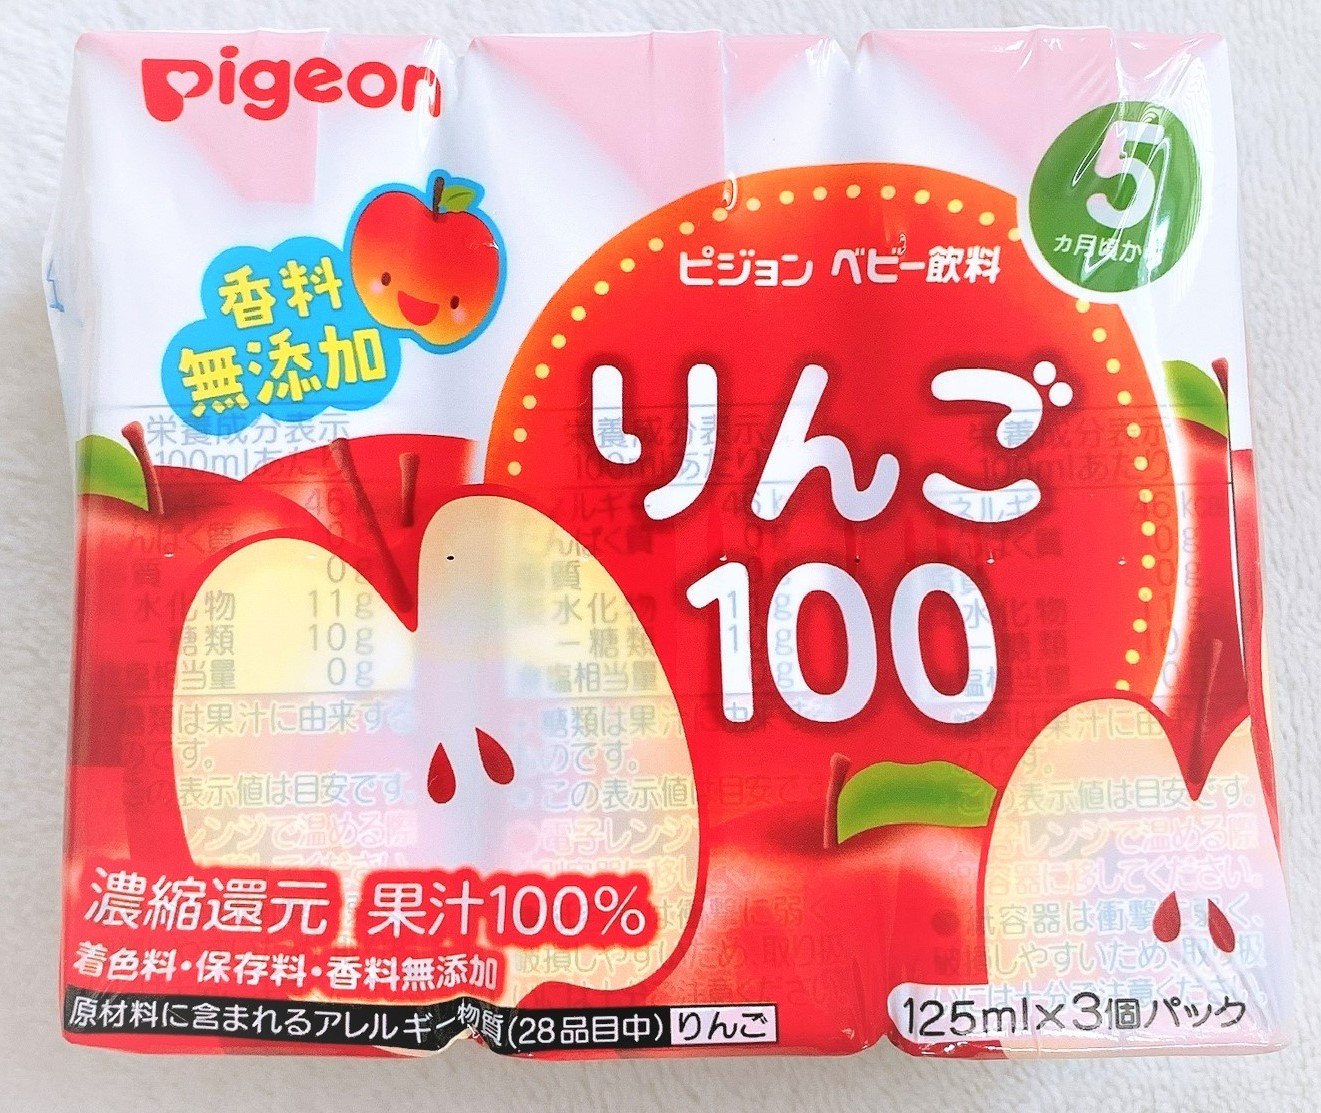 Nước trái cây cho bé Pigeon Nhật Bản vị táo đỏ